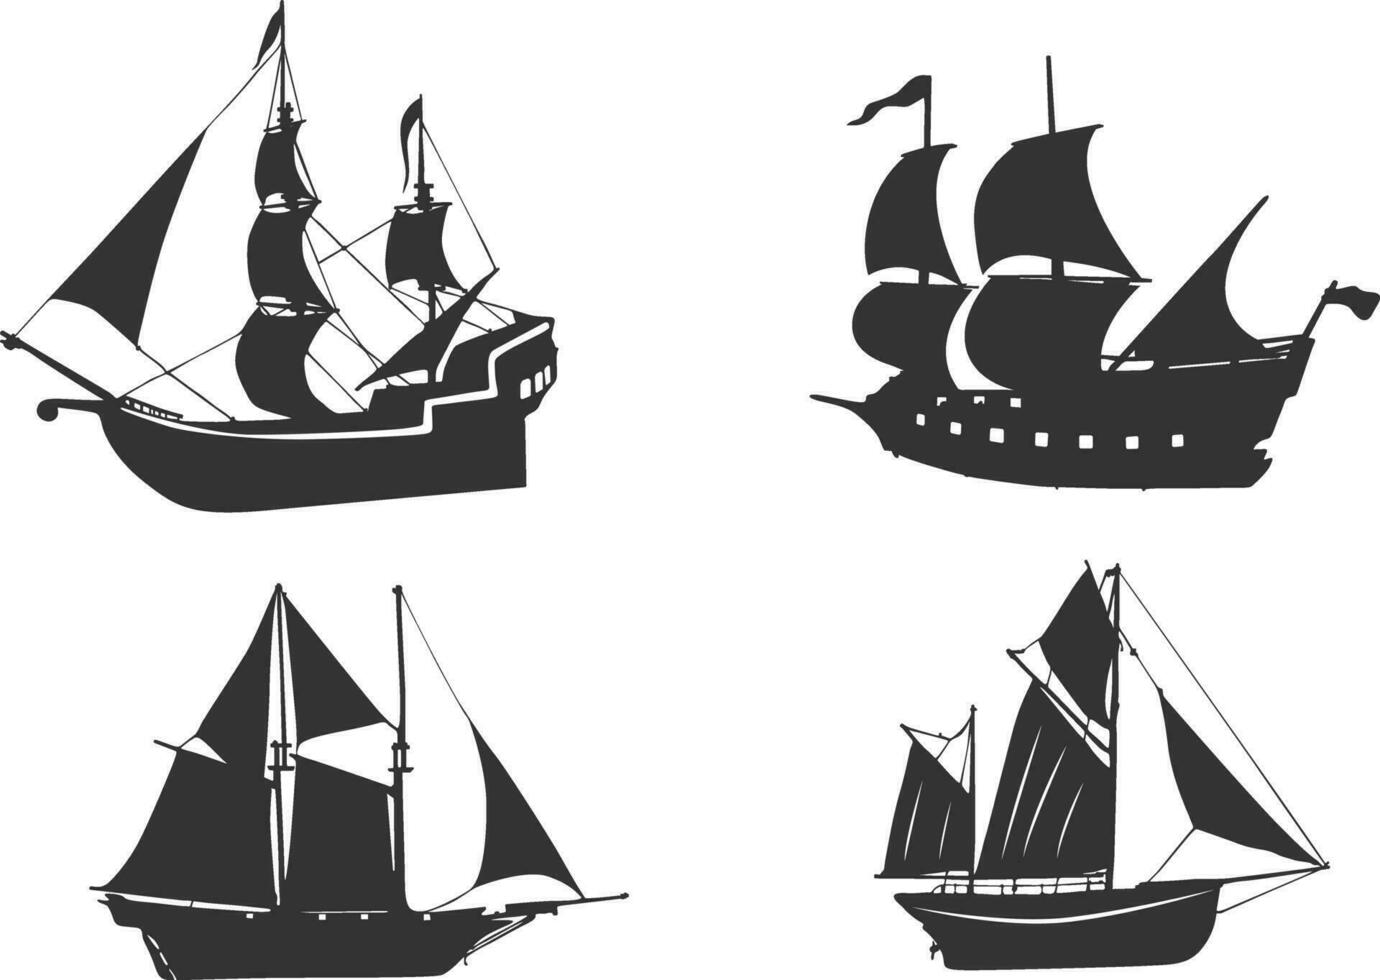 gammal fartyg silhuett, pirat fartyg vektor, fartyg silhuett, segling fartyg silhuett, gammal fartyg vektor